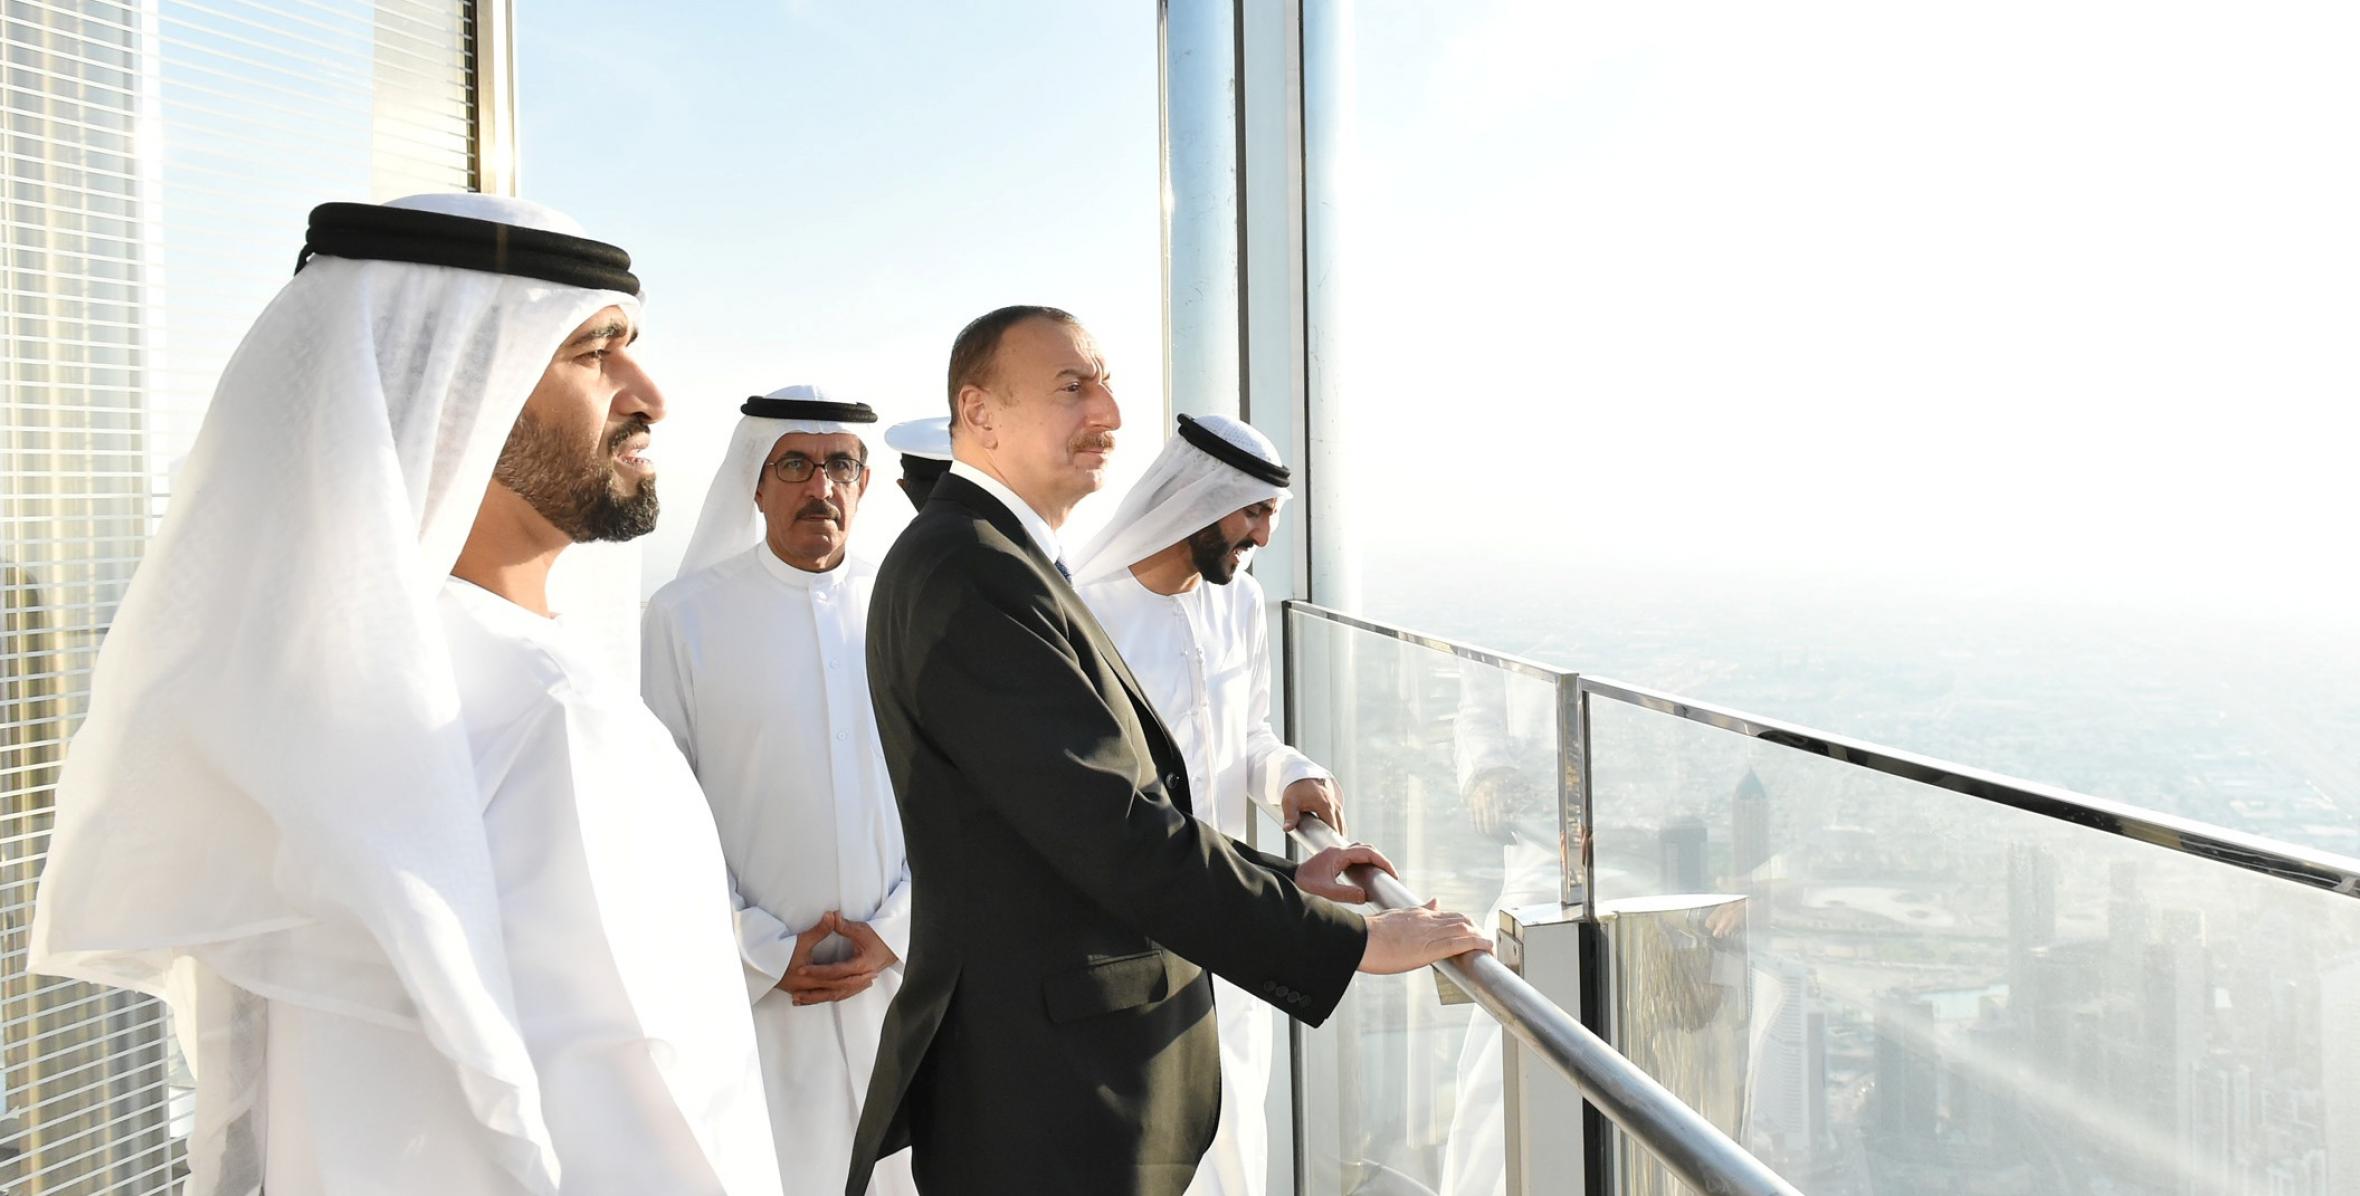 Ilham Aliyev visited Burj Khalifa in Dubai